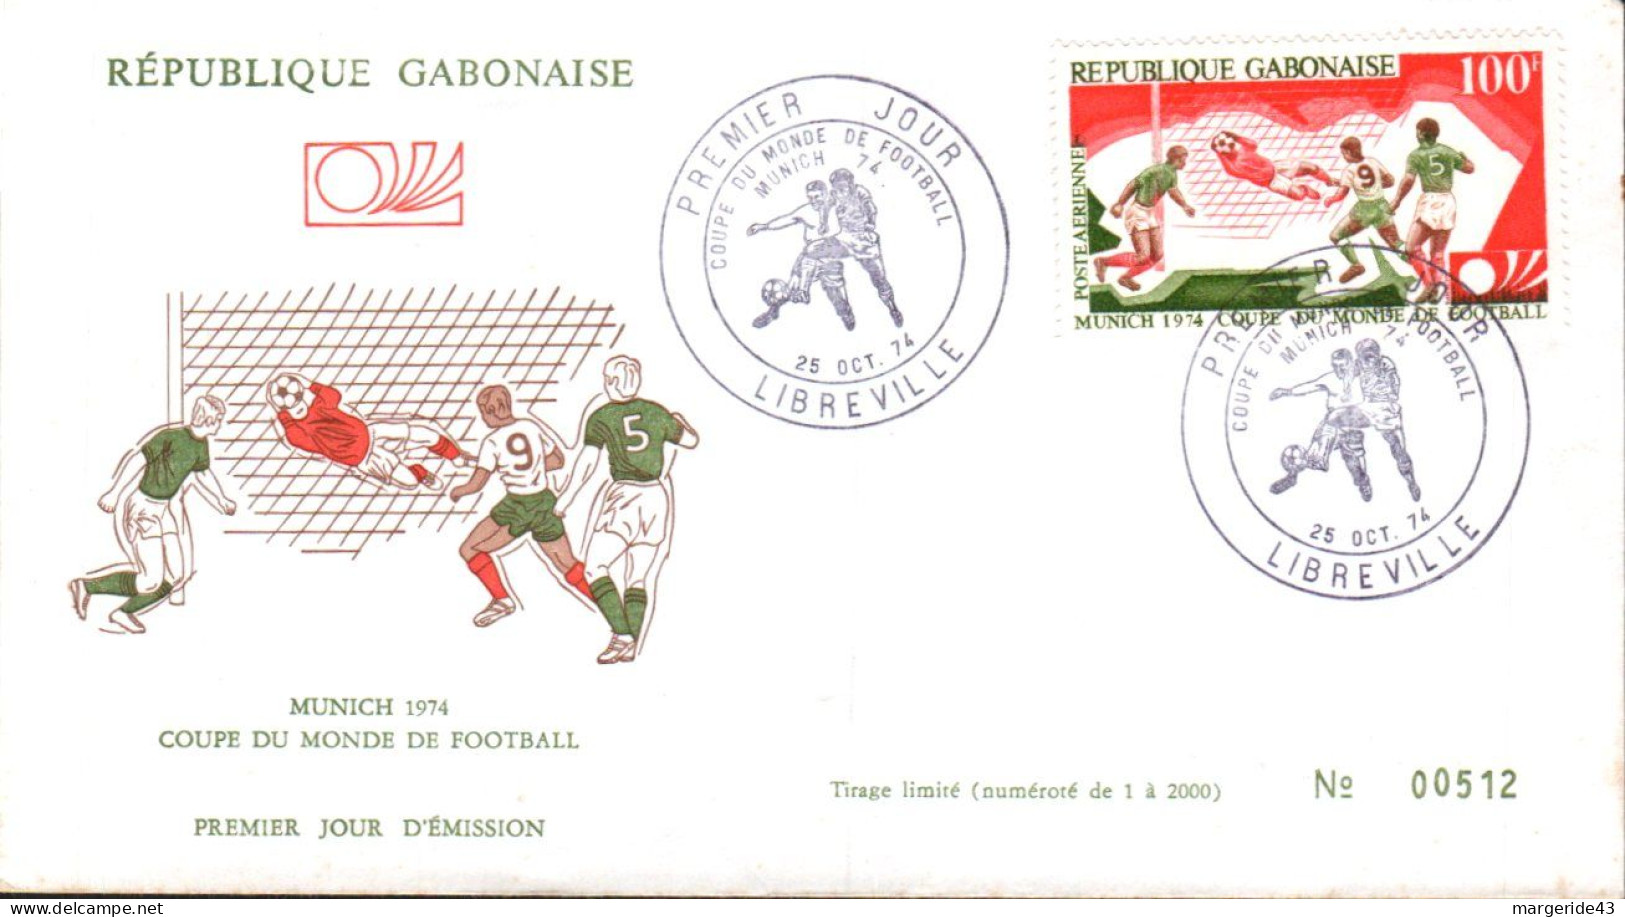 GABON FDC 1974 FOOTBALL MUNICH 1974 - Gabun (1960-...)